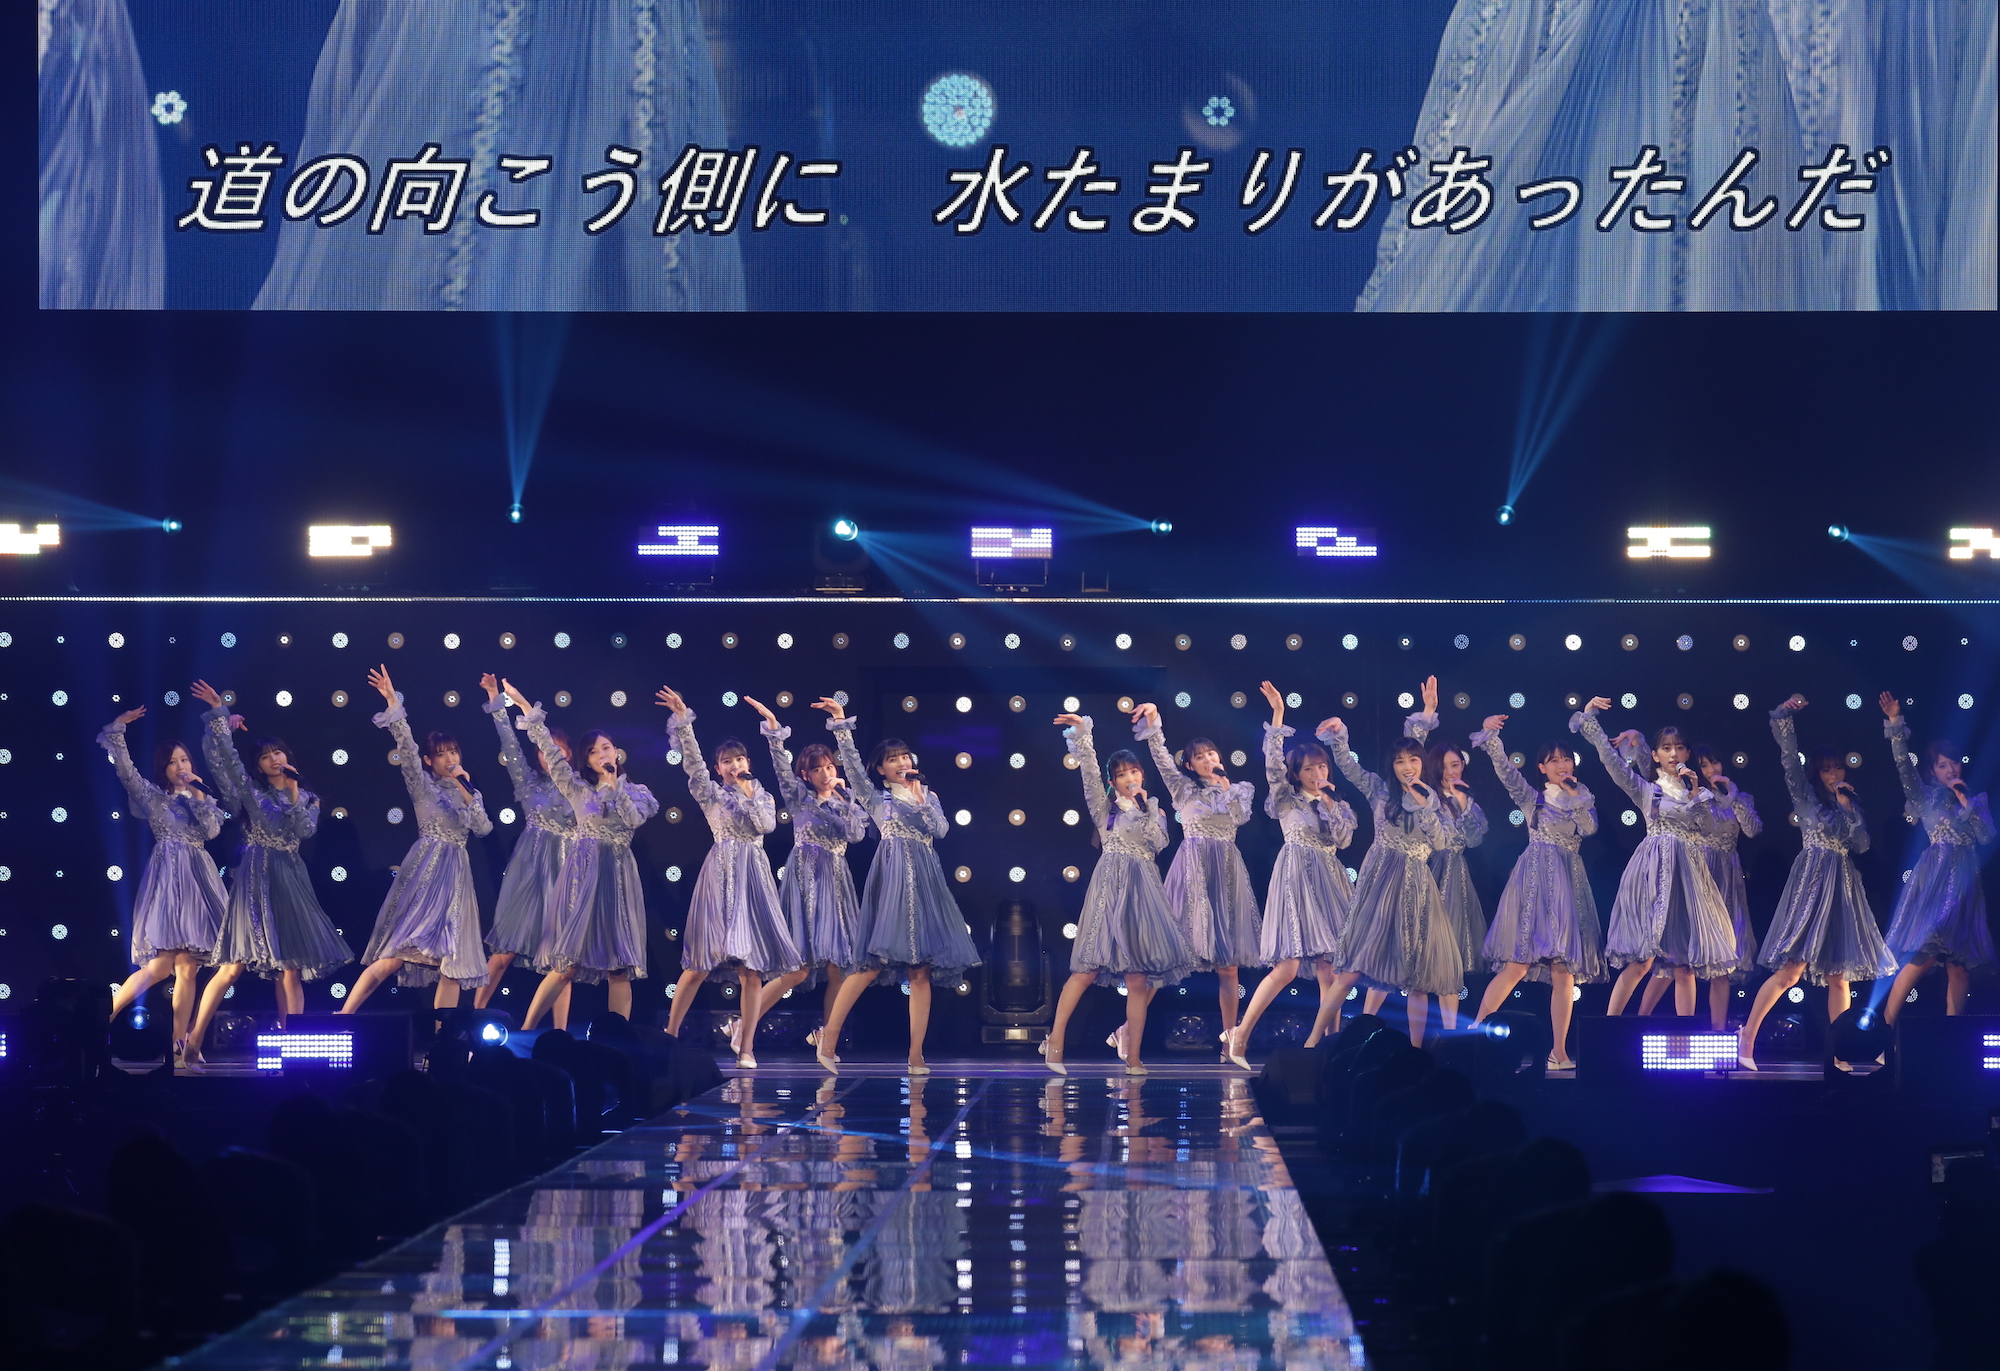 乃木坂46／2020年2月29日、国立代々木競技場 第一体育館にて (C)マイナビ TOKYO GIRLS COLLECTION2020 S/S